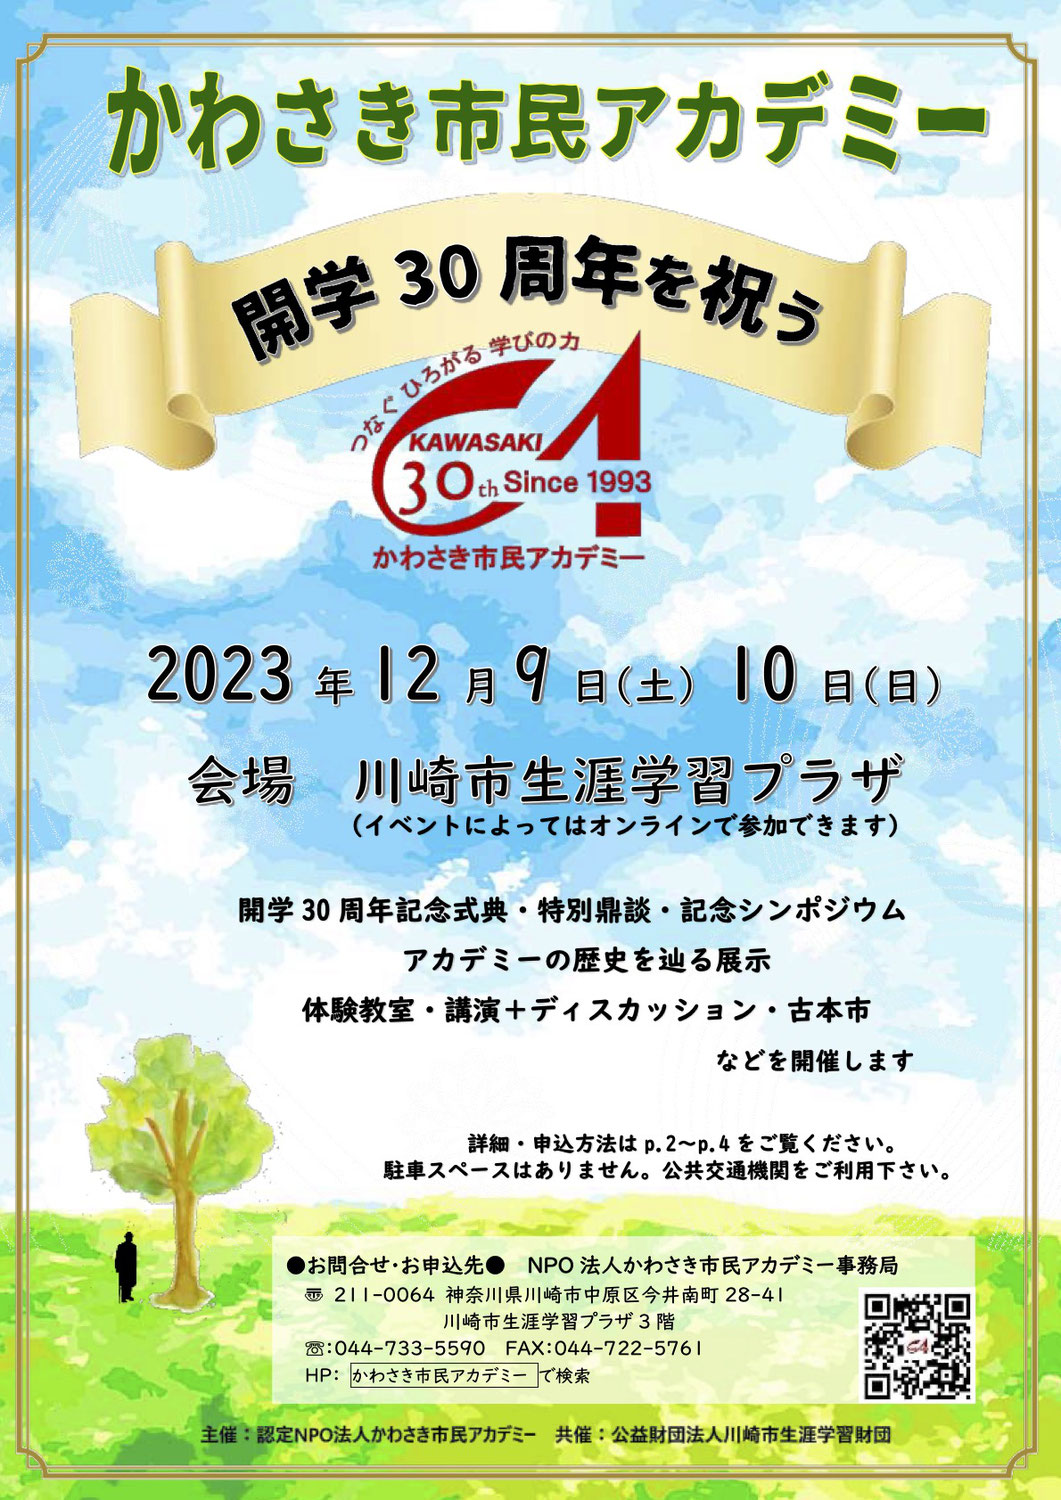 かわさき市民アカデミー開学30周年イベント